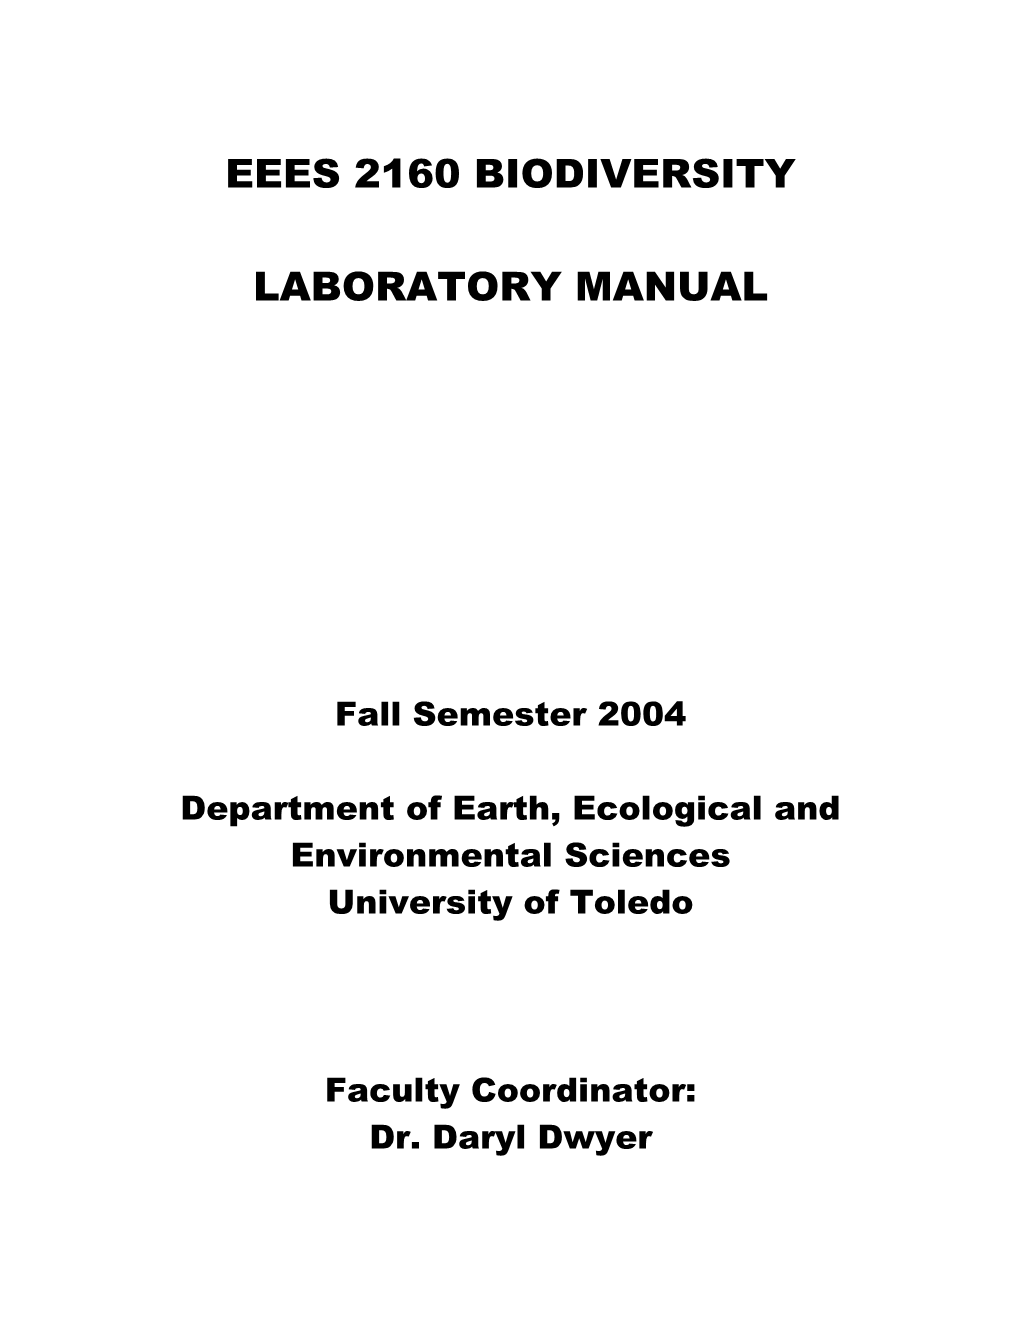 Eees 2160 Biodiversity